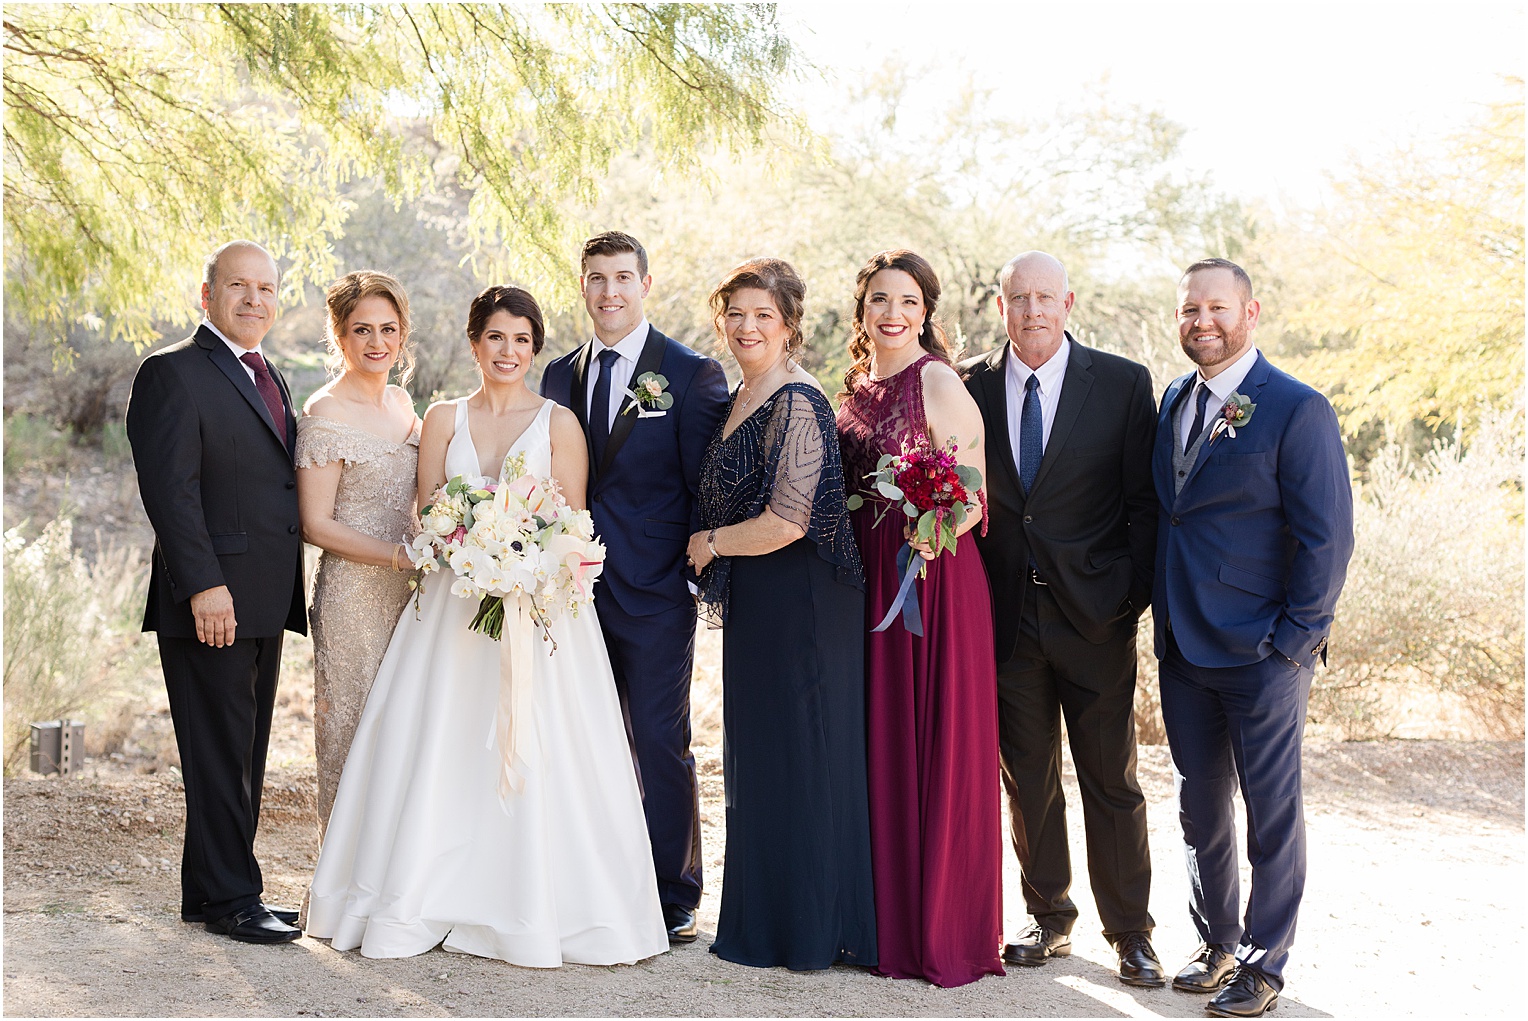 Saguaro Buttes Wedding Tucson, Arizona Farnaz & Brian family wedding photos